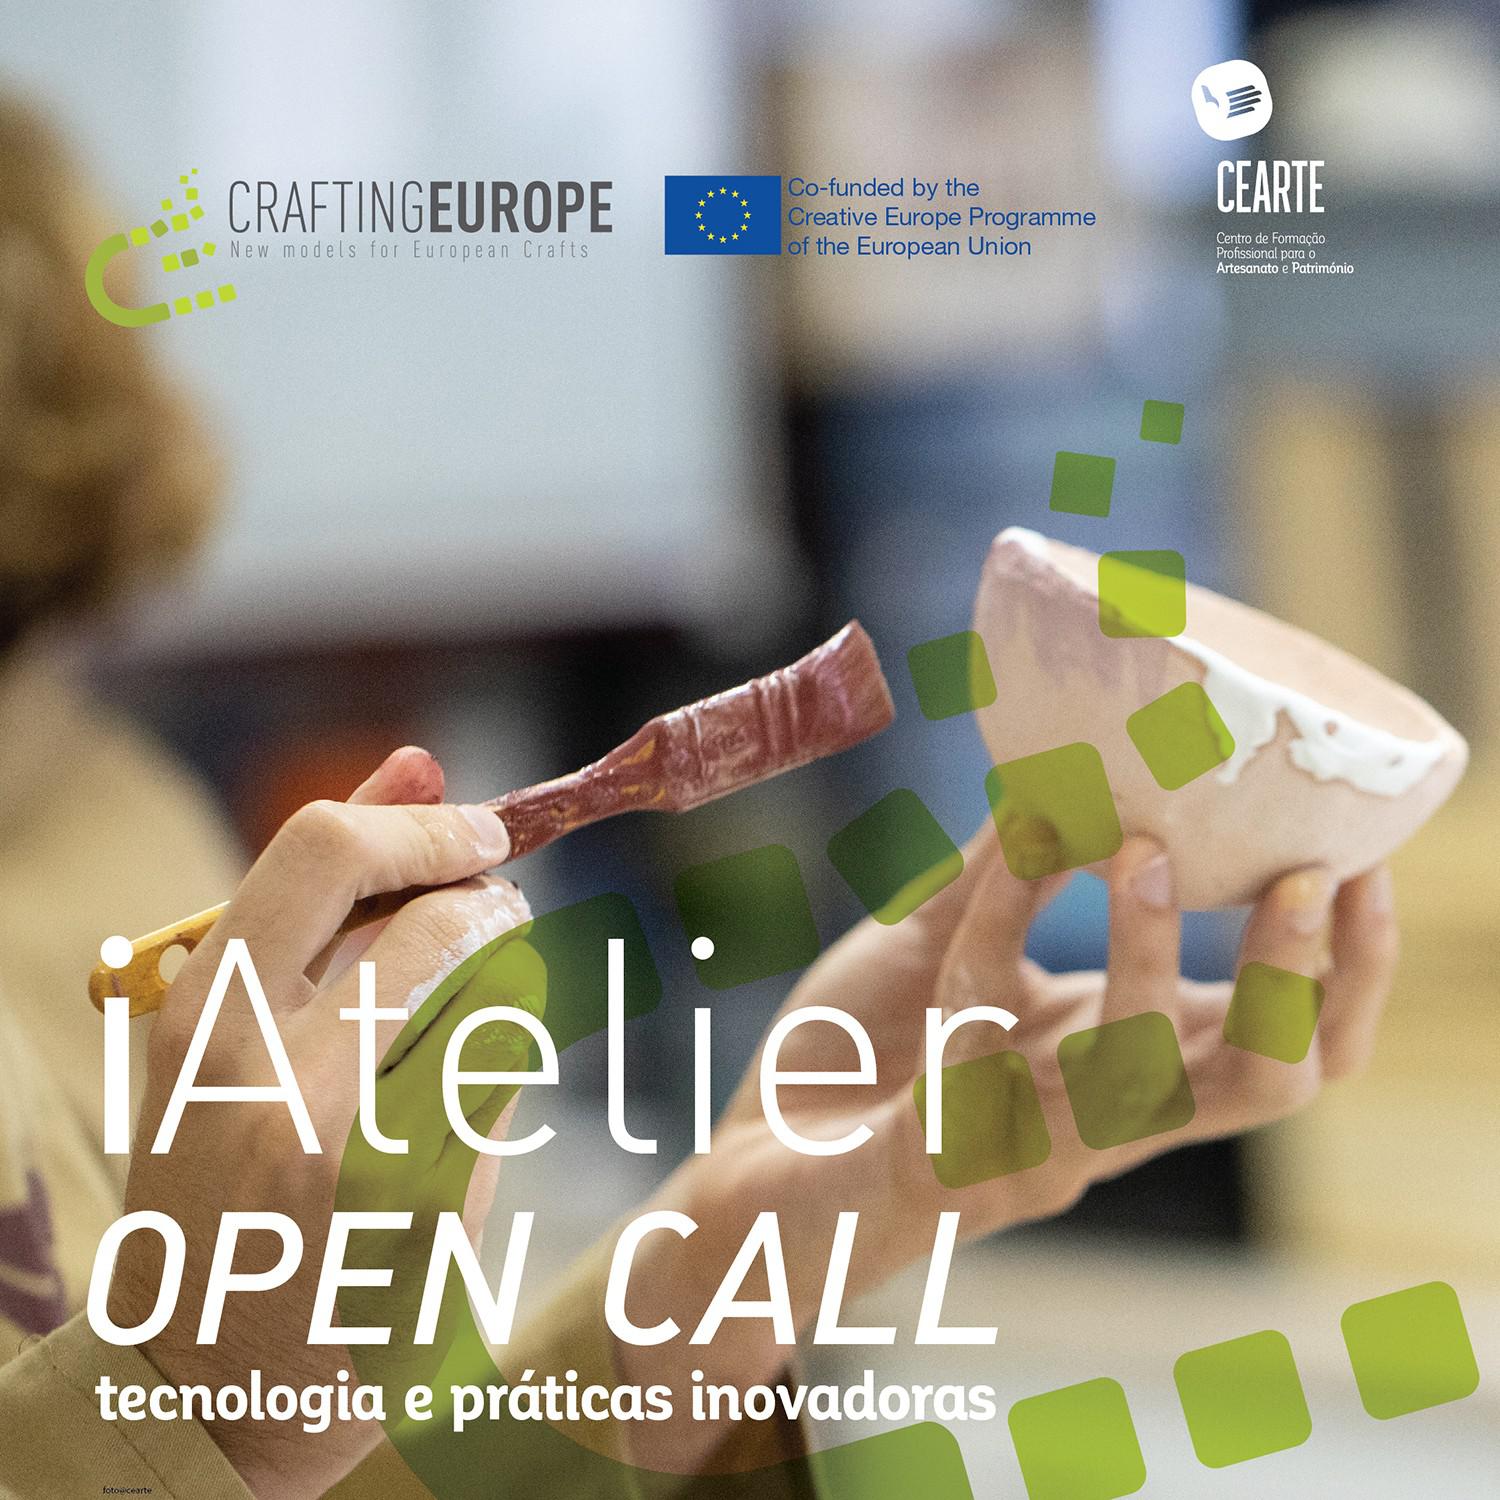 O CEARTE tem abertas candidaturas para o programa iAtelier, no âmbito do projeto CRAFTING EUROPE